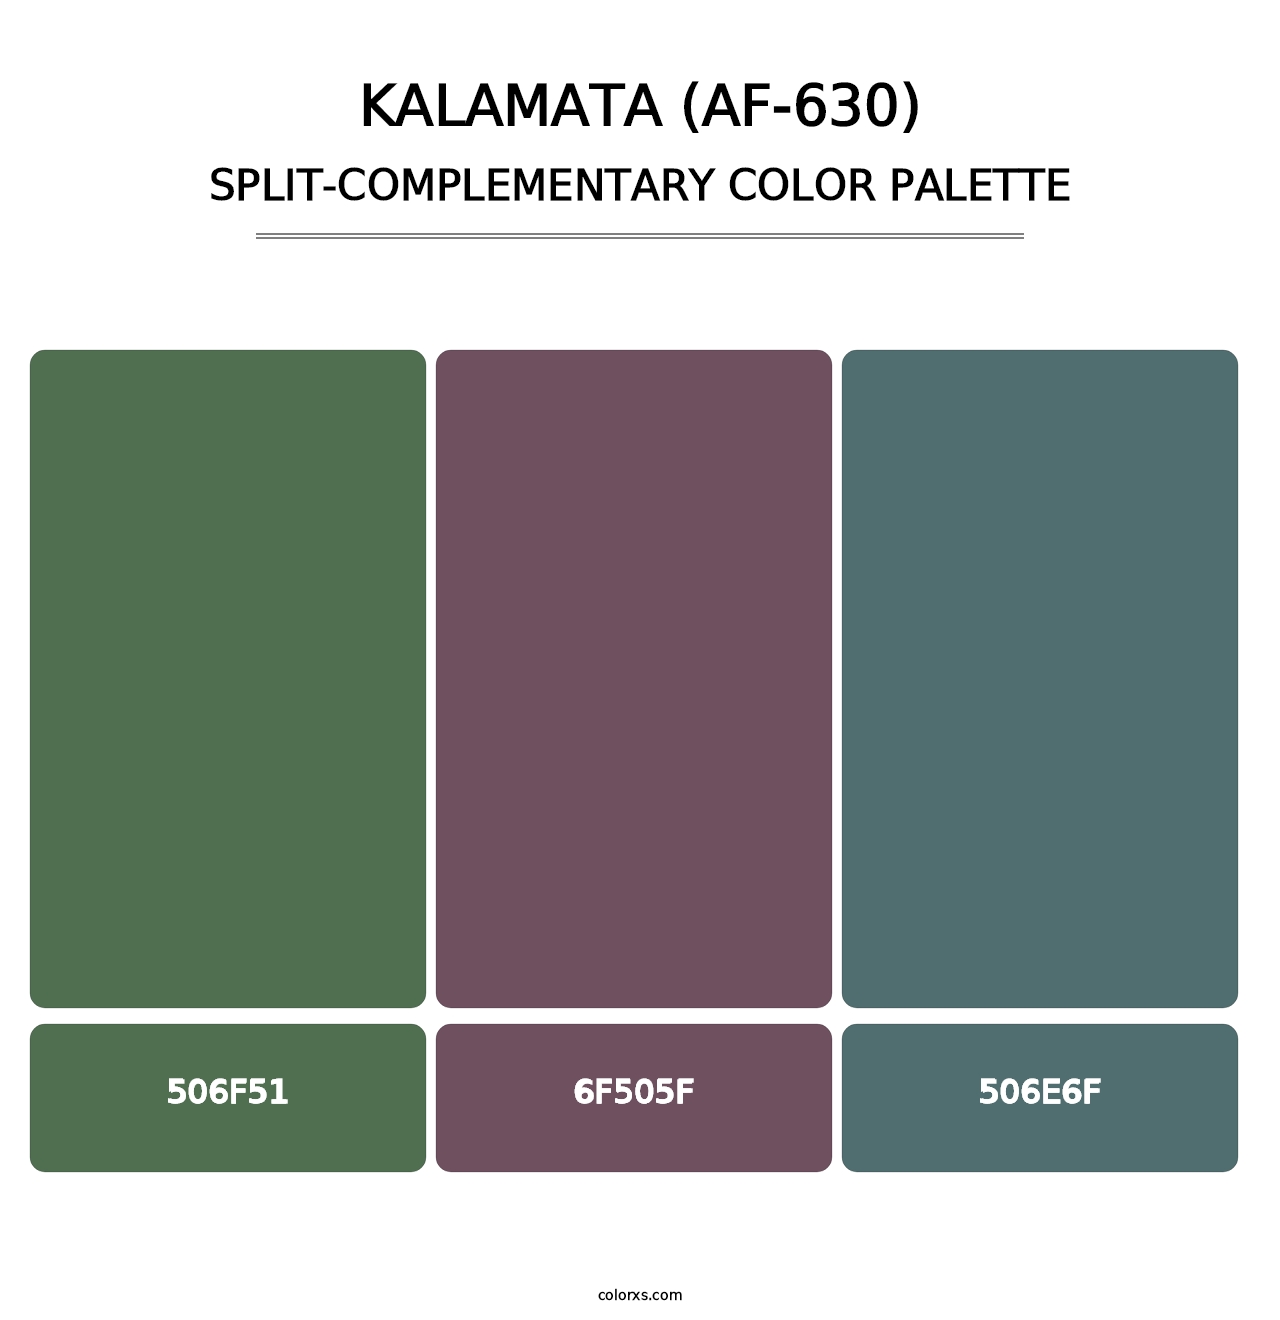 Kalamata (AF-630) - Split-Complementary Color Palette